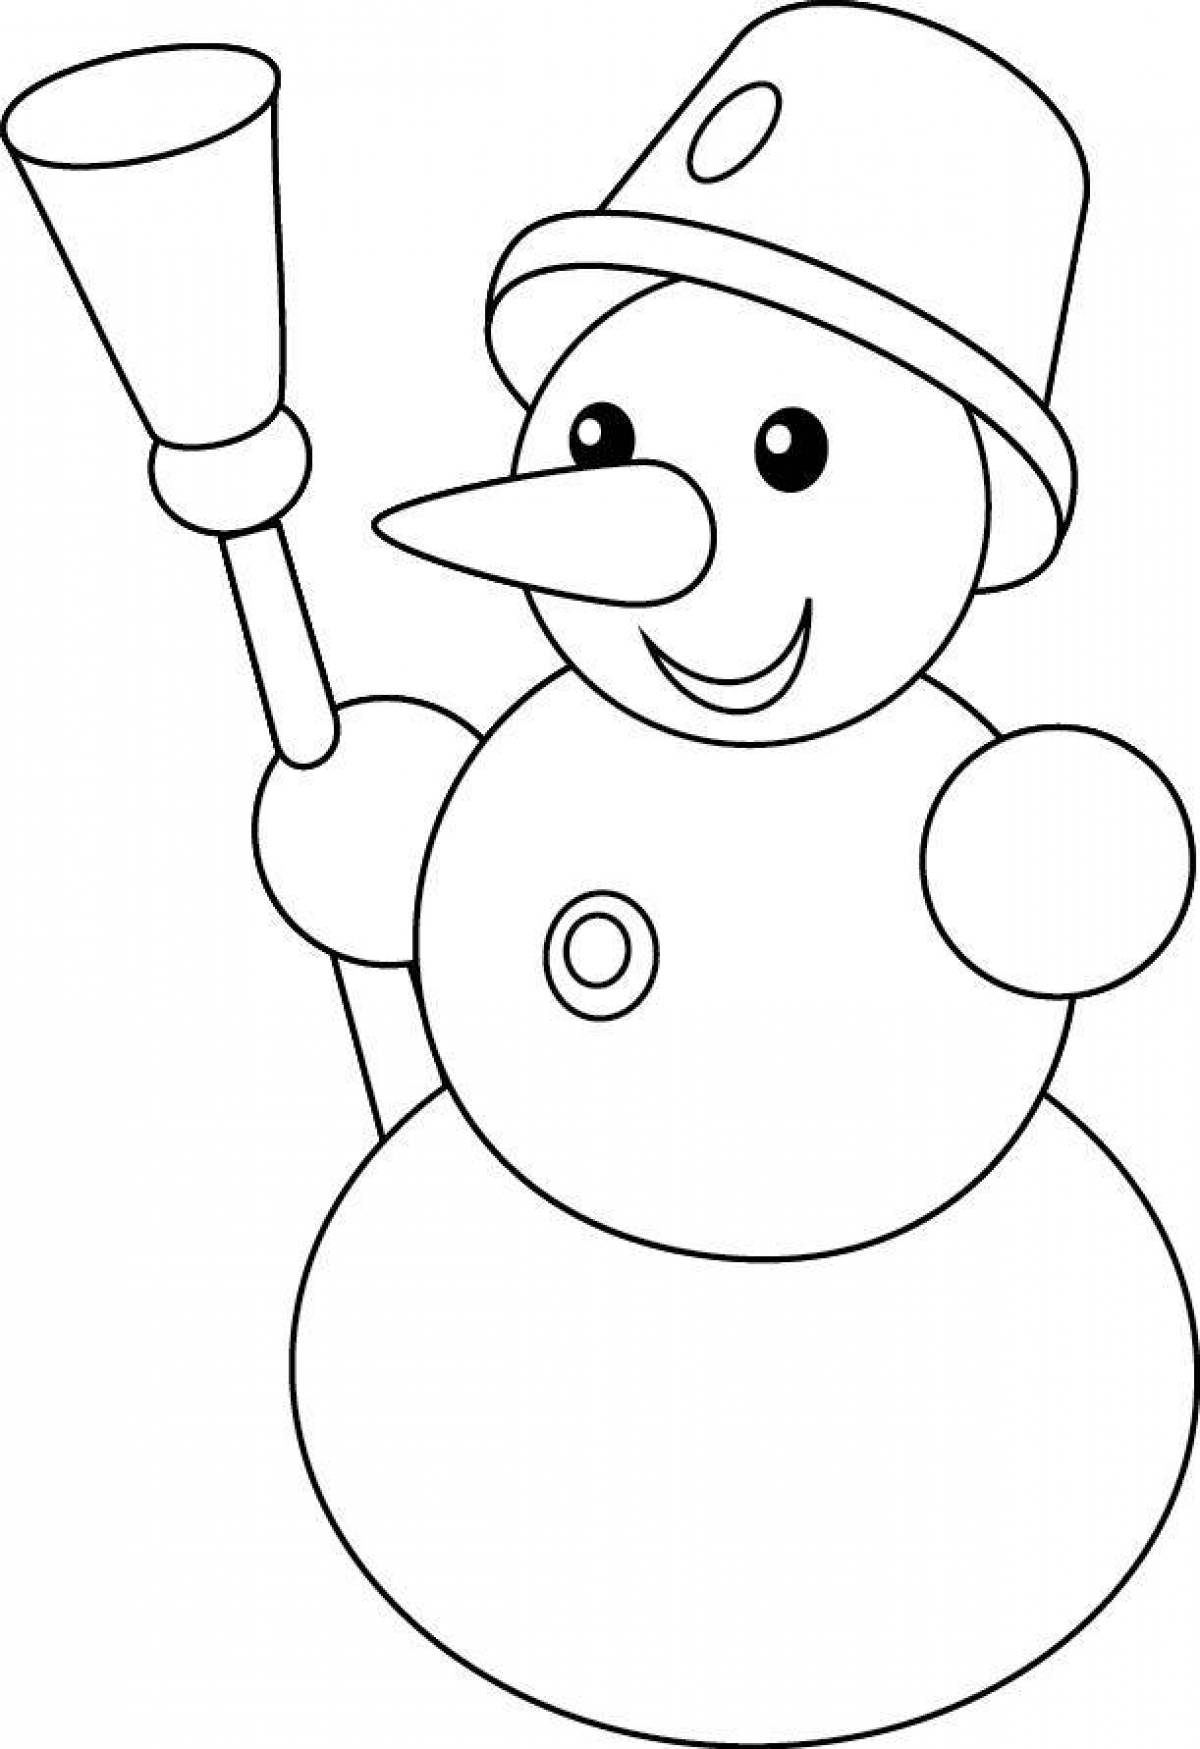 Snowman pattern #5